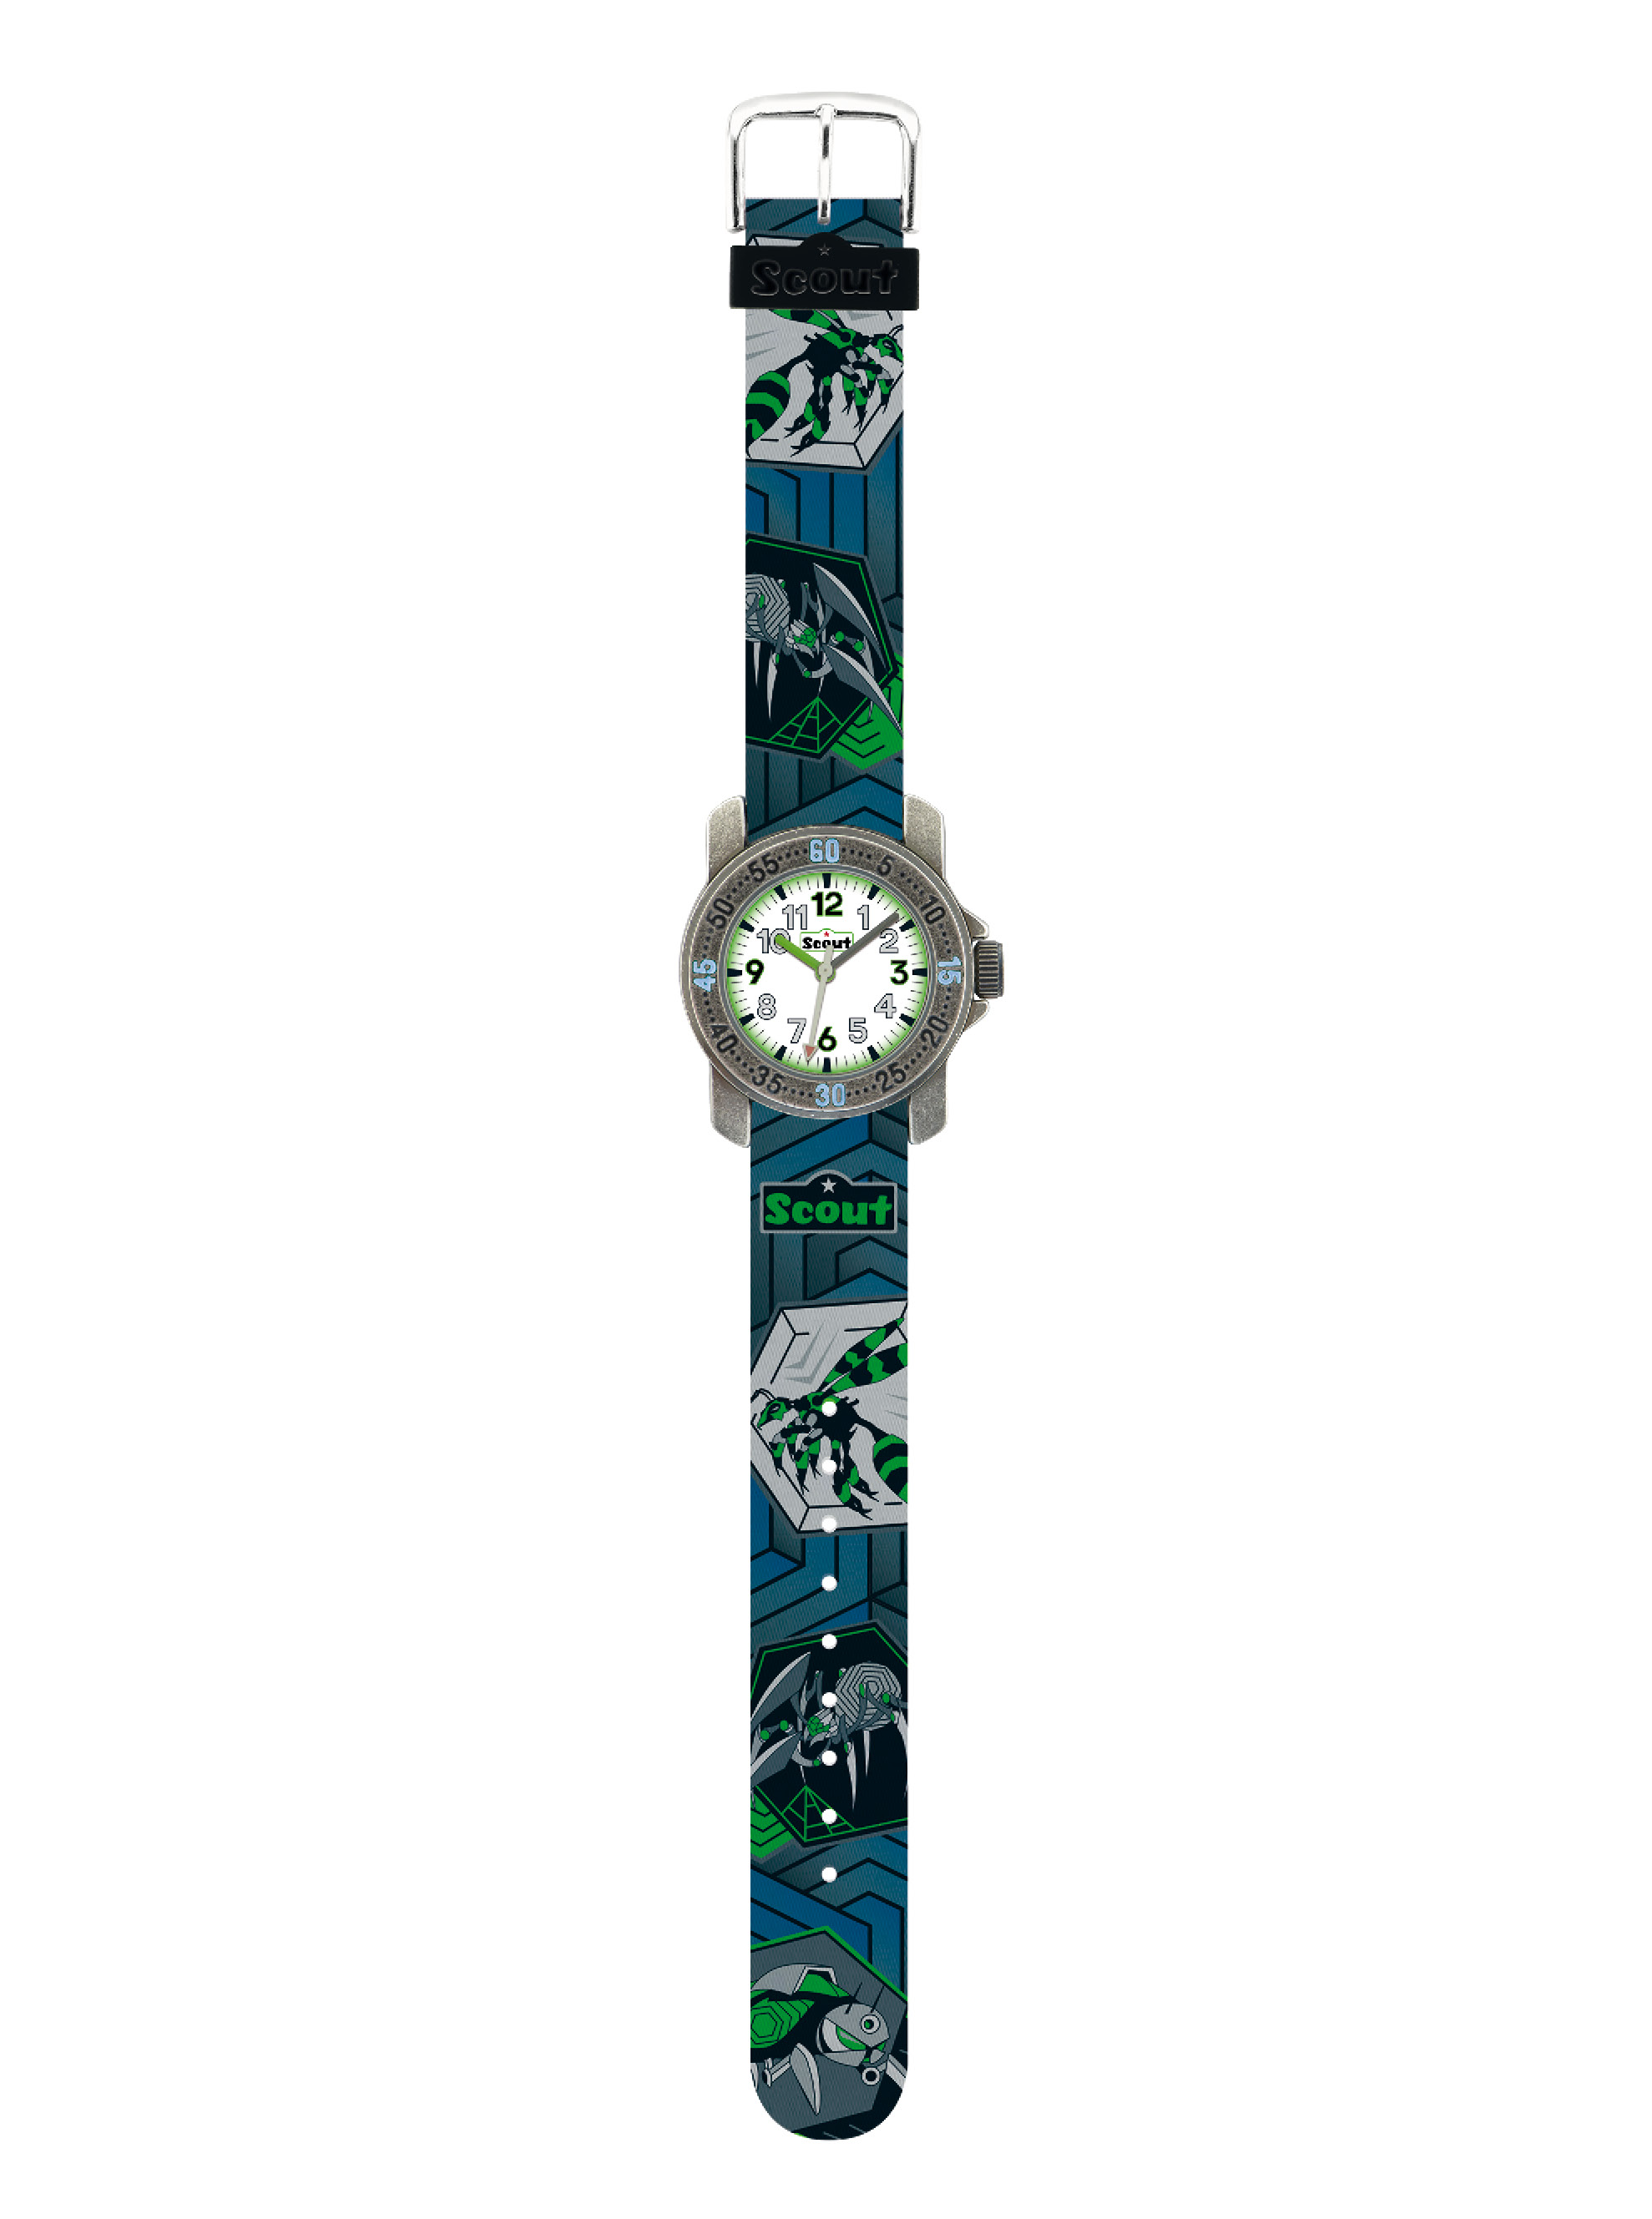 SCOUT Armbanduhr grau/grün